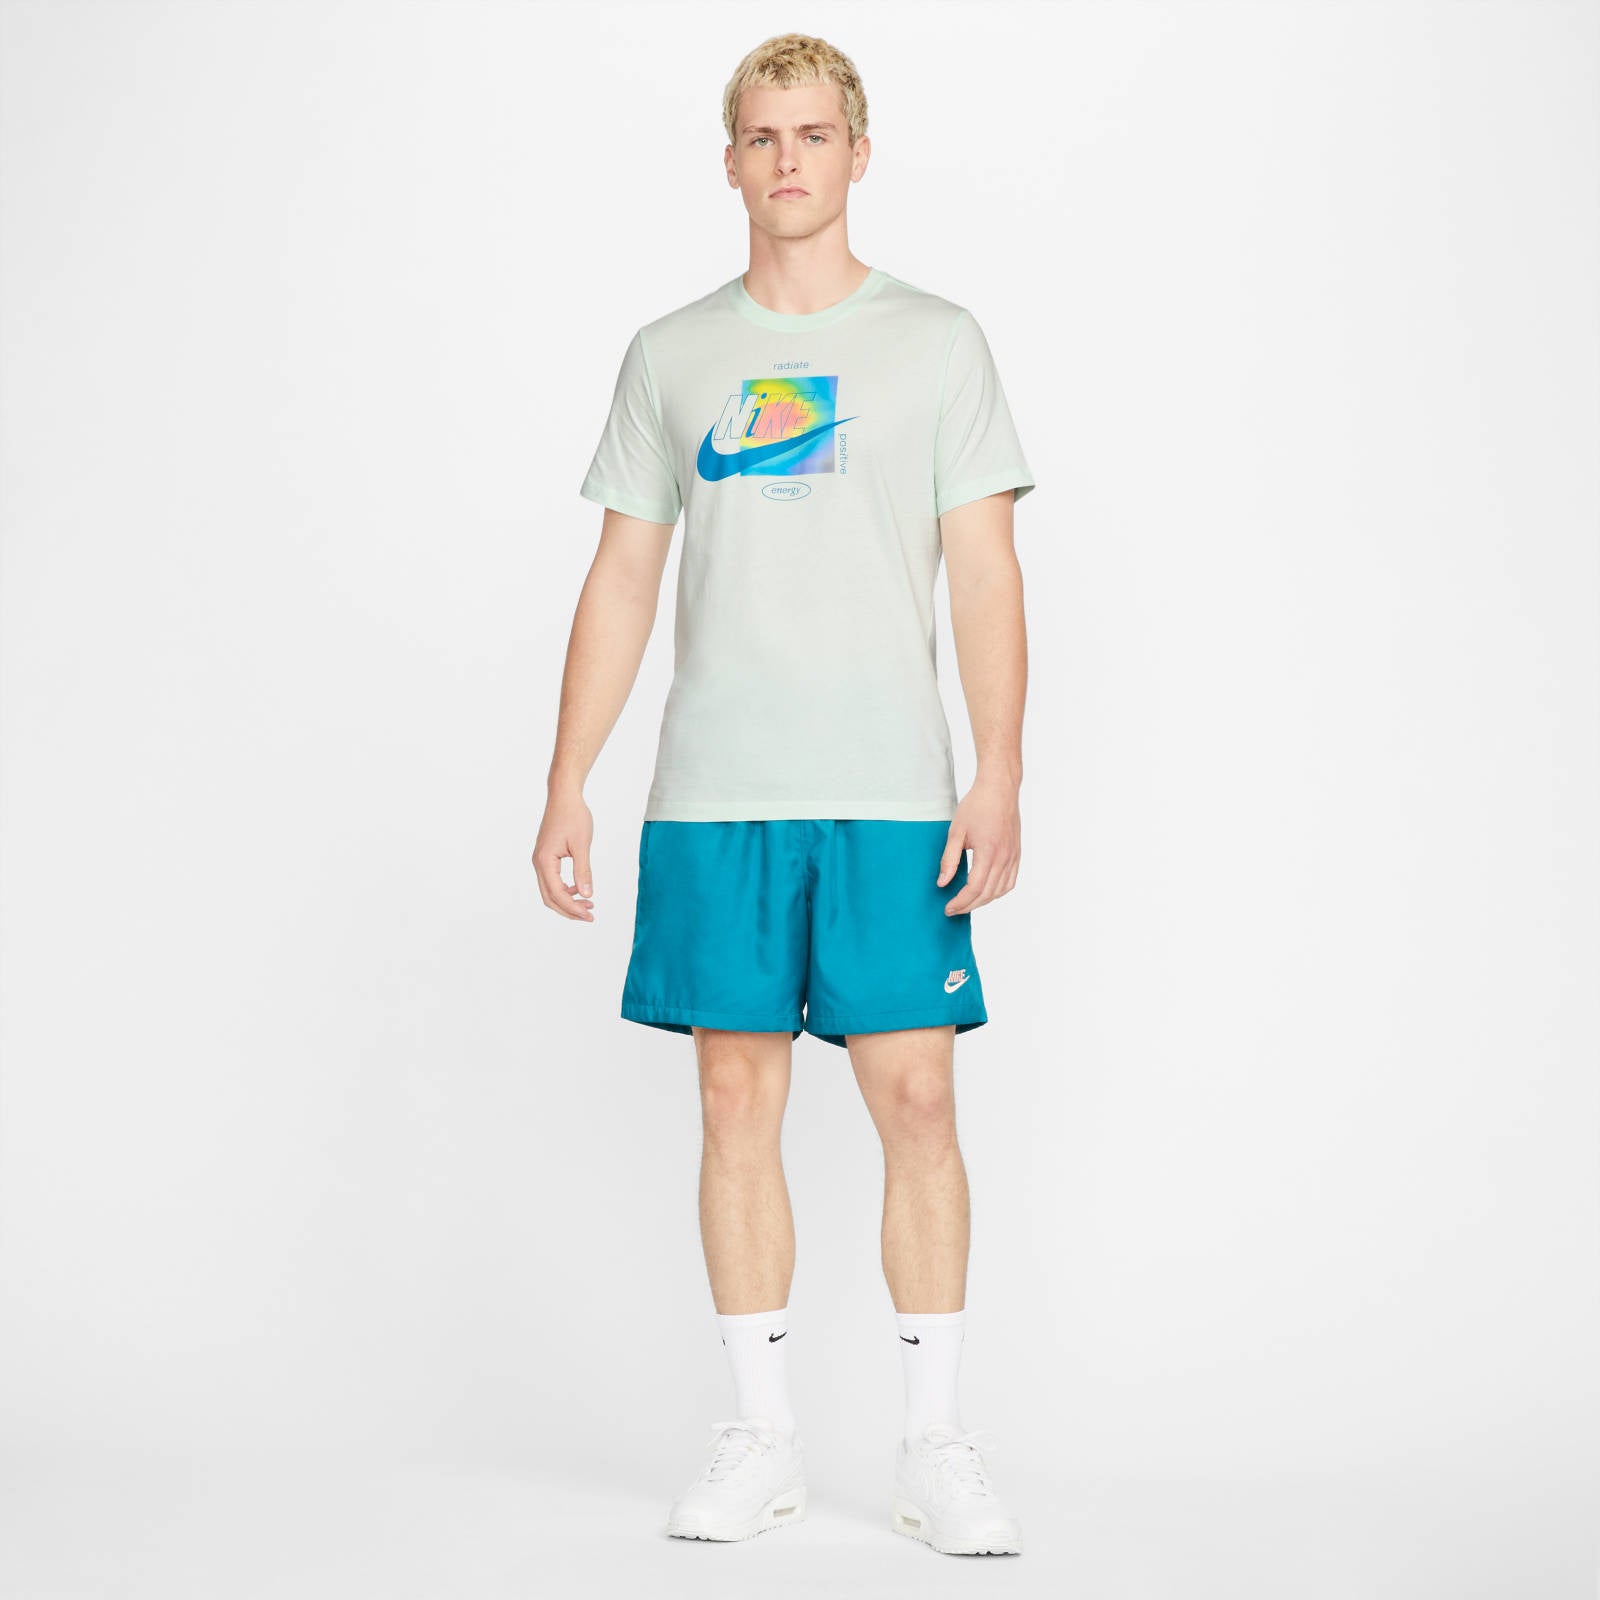 Nike T-shirt Sportswear, T-shirt, Nike